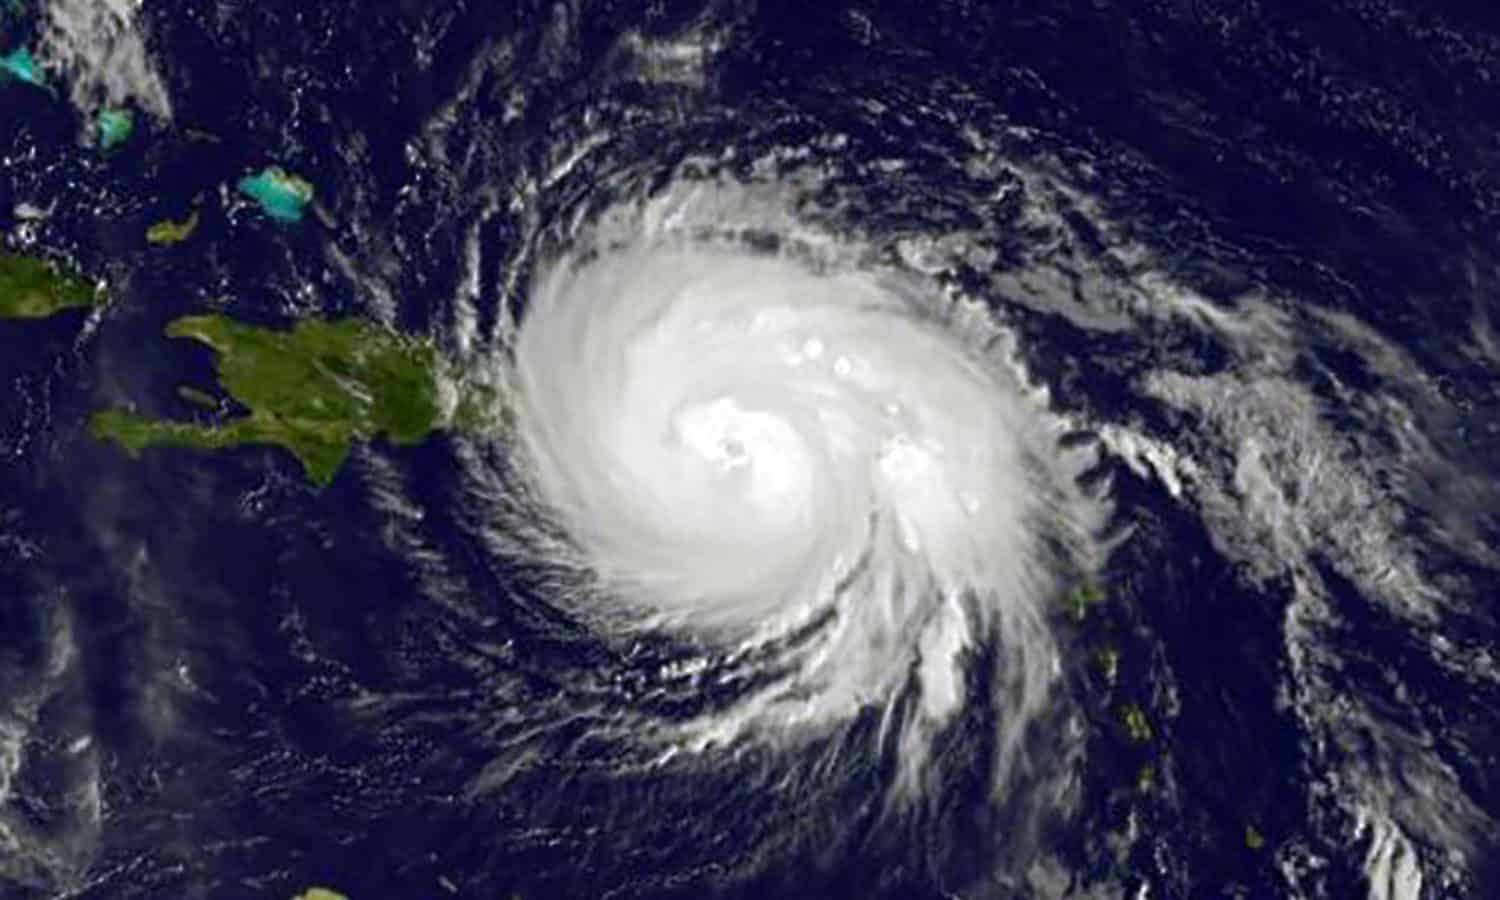 波多黎各实时复苏基金指导100%的捐款长期救援玛丽亚飓风的受害者。